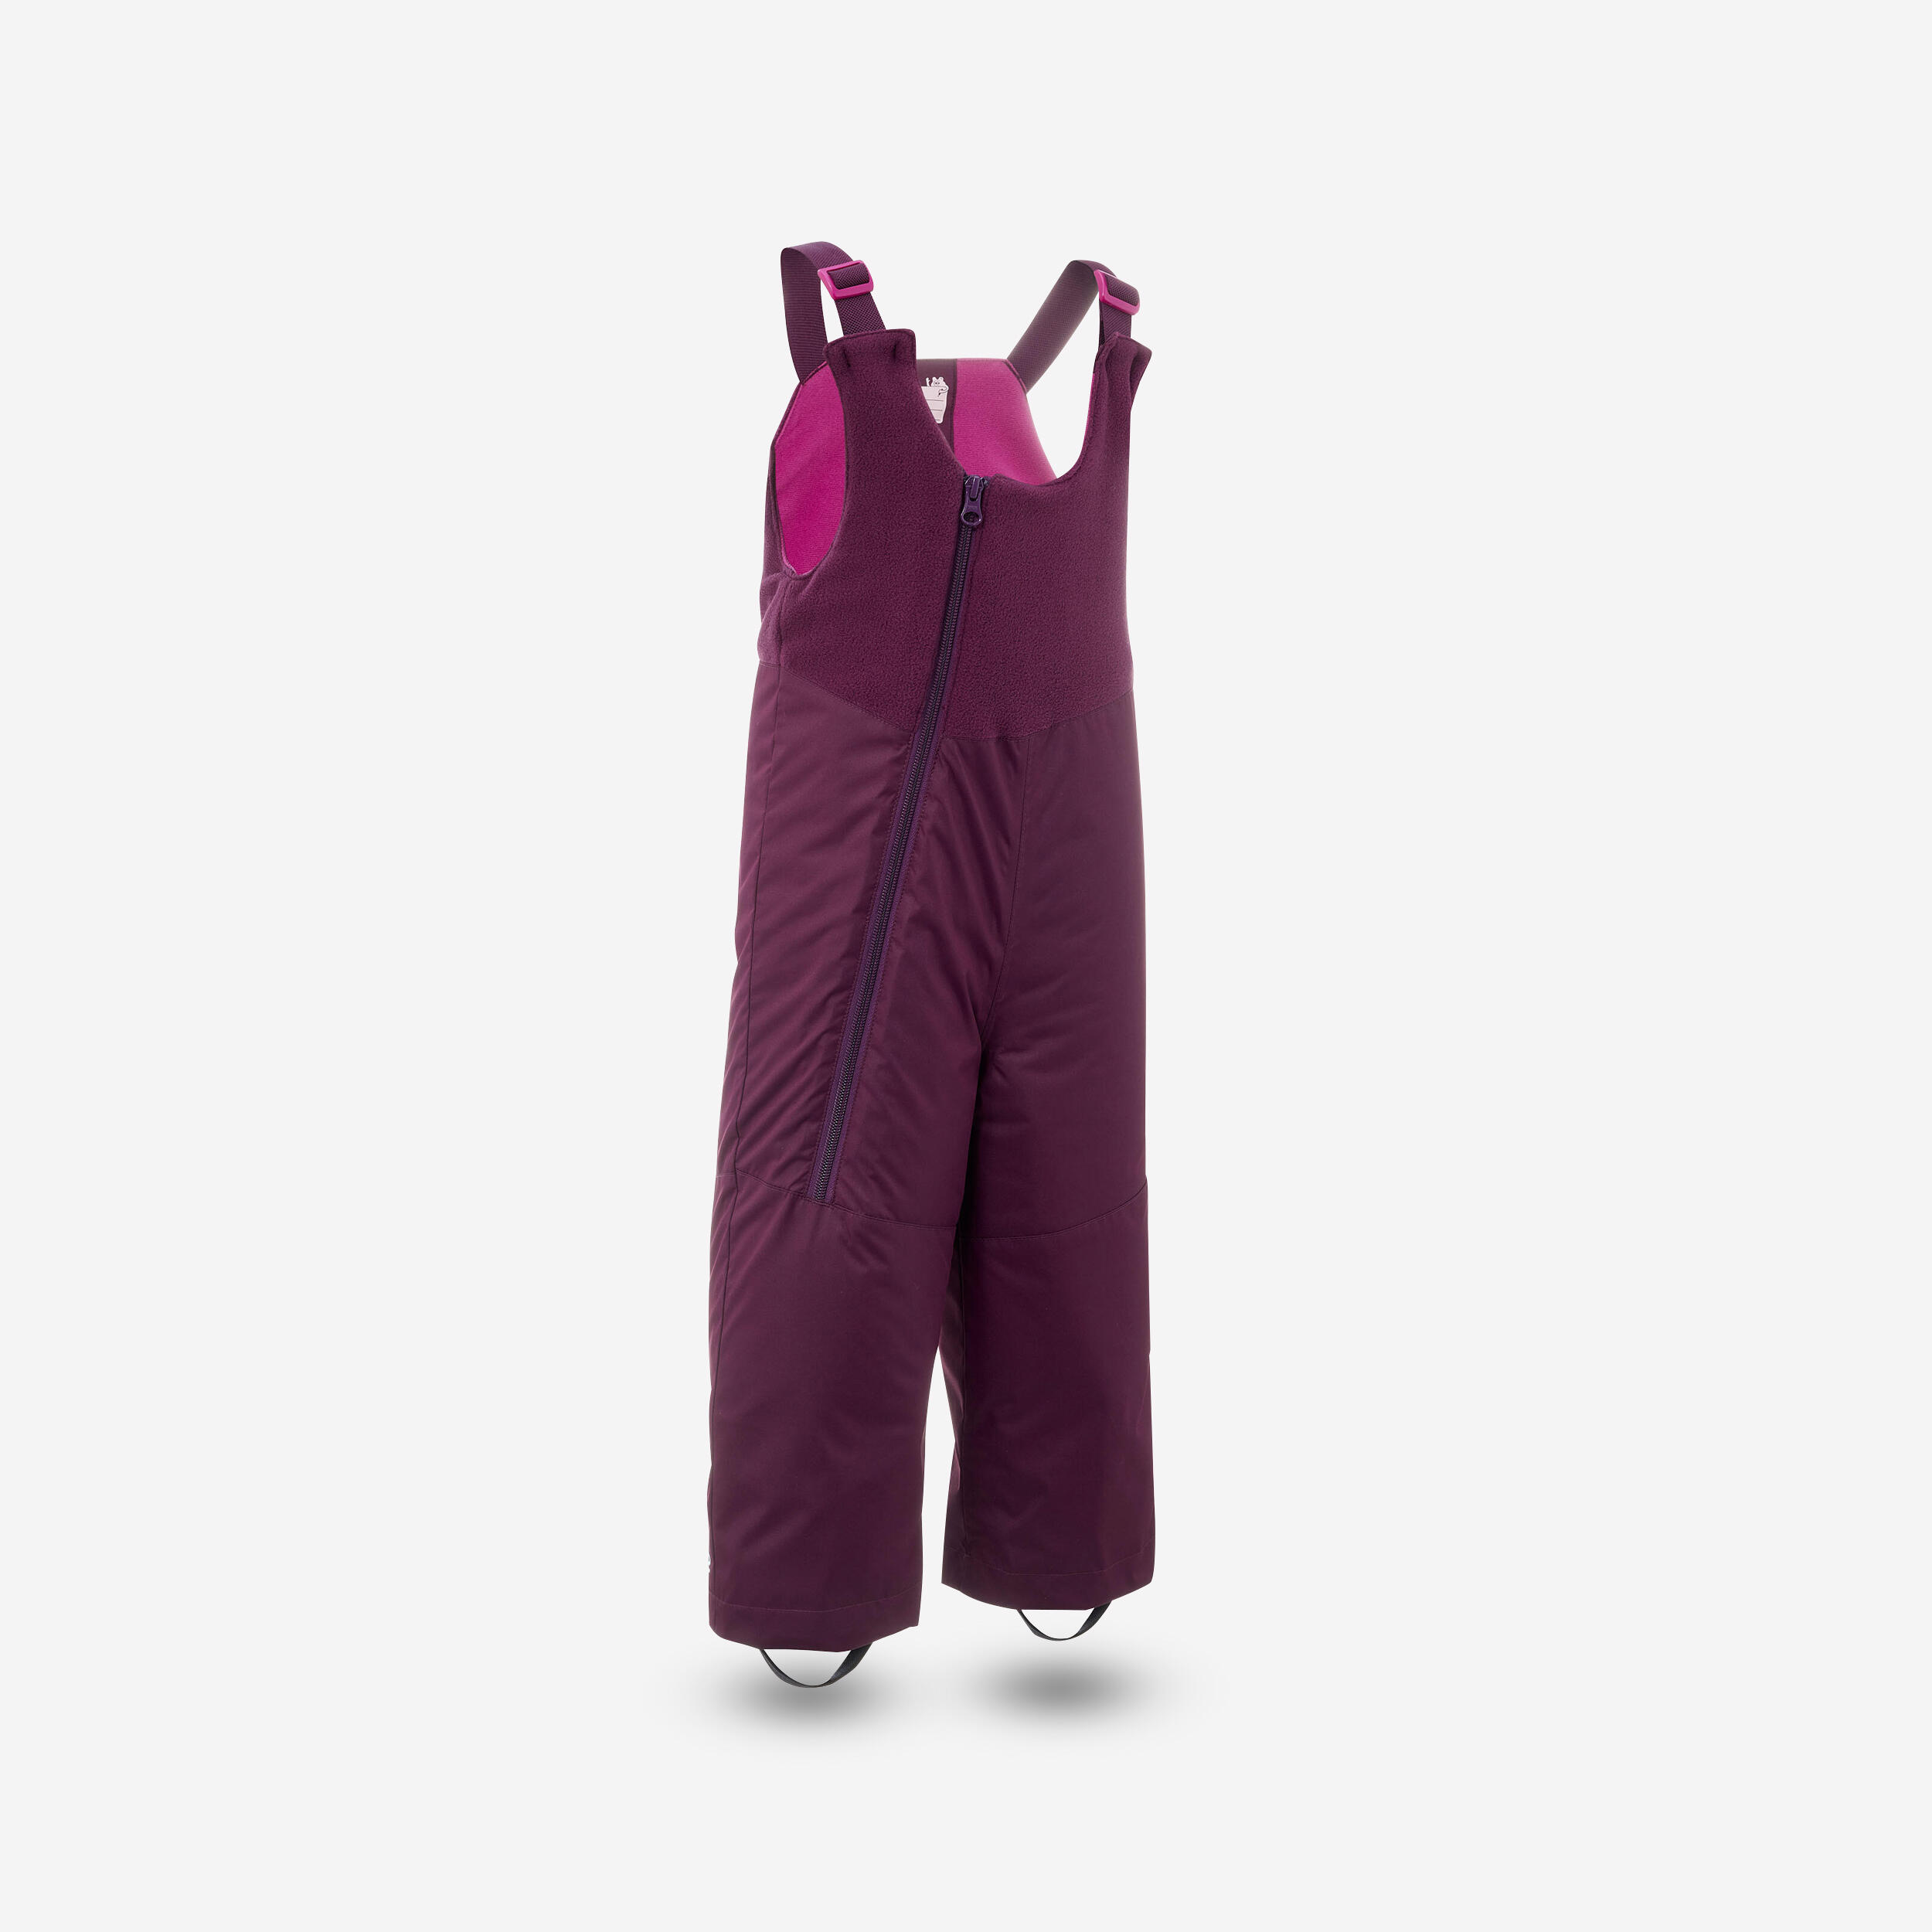 salopette ski bébé chaude - 500 warm - violette - wedze